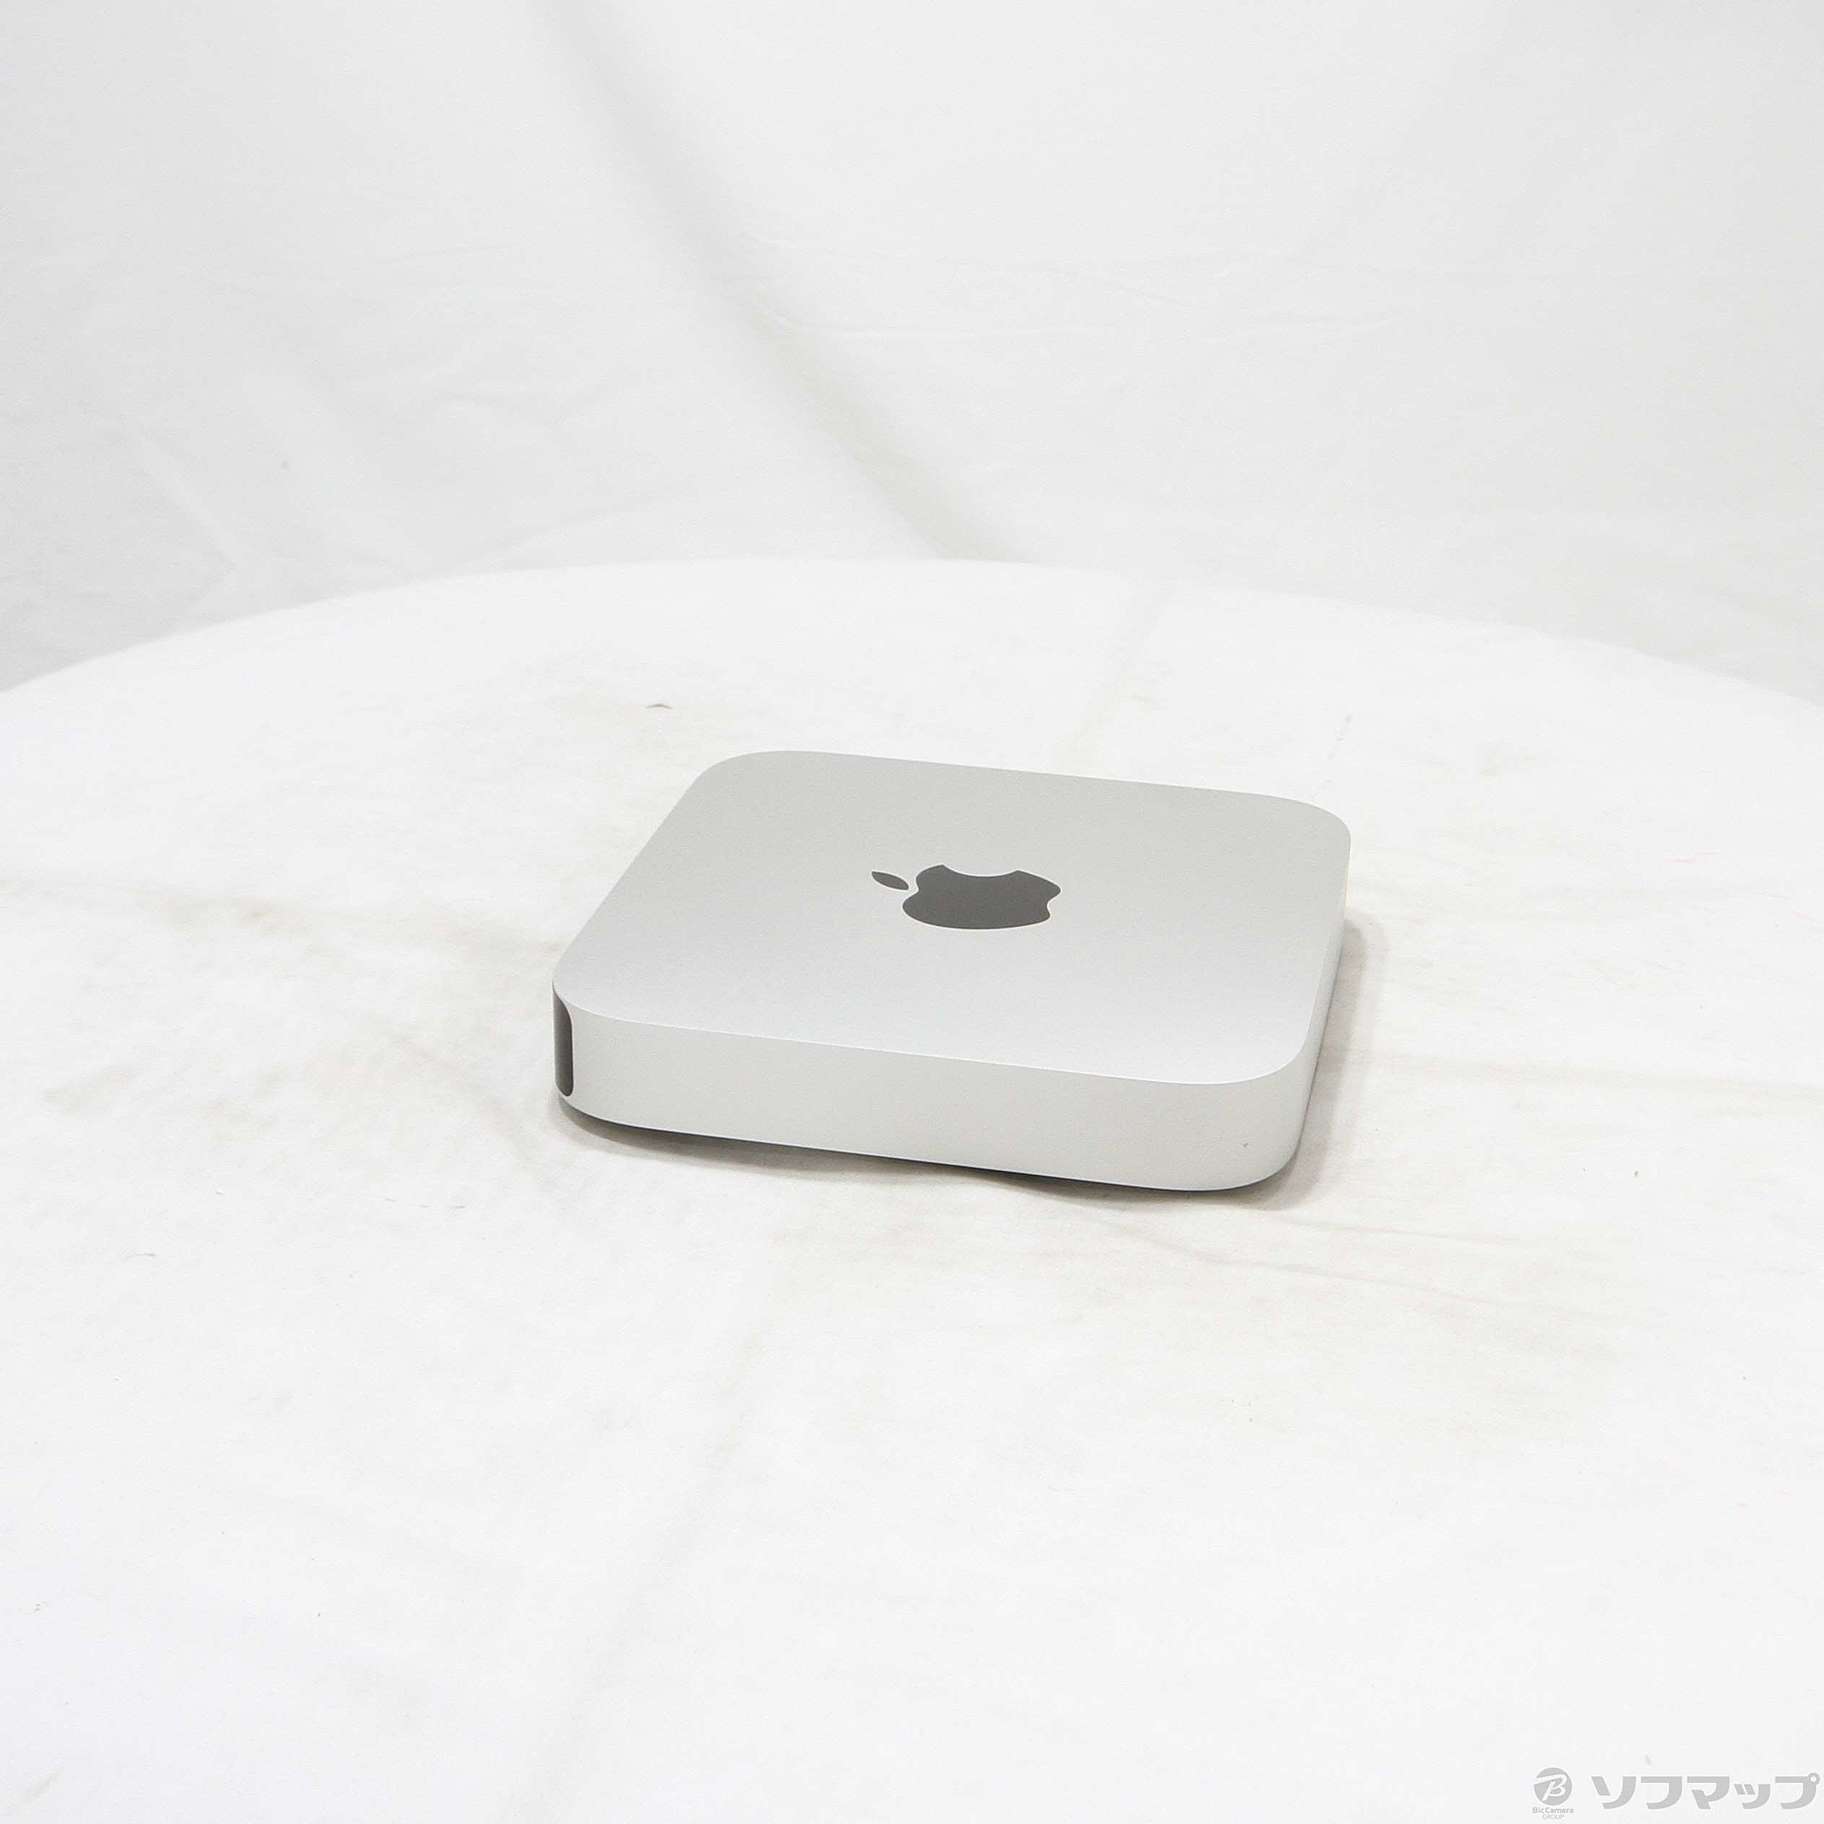 APPLE Mac mini MAC MINI MD387J/A